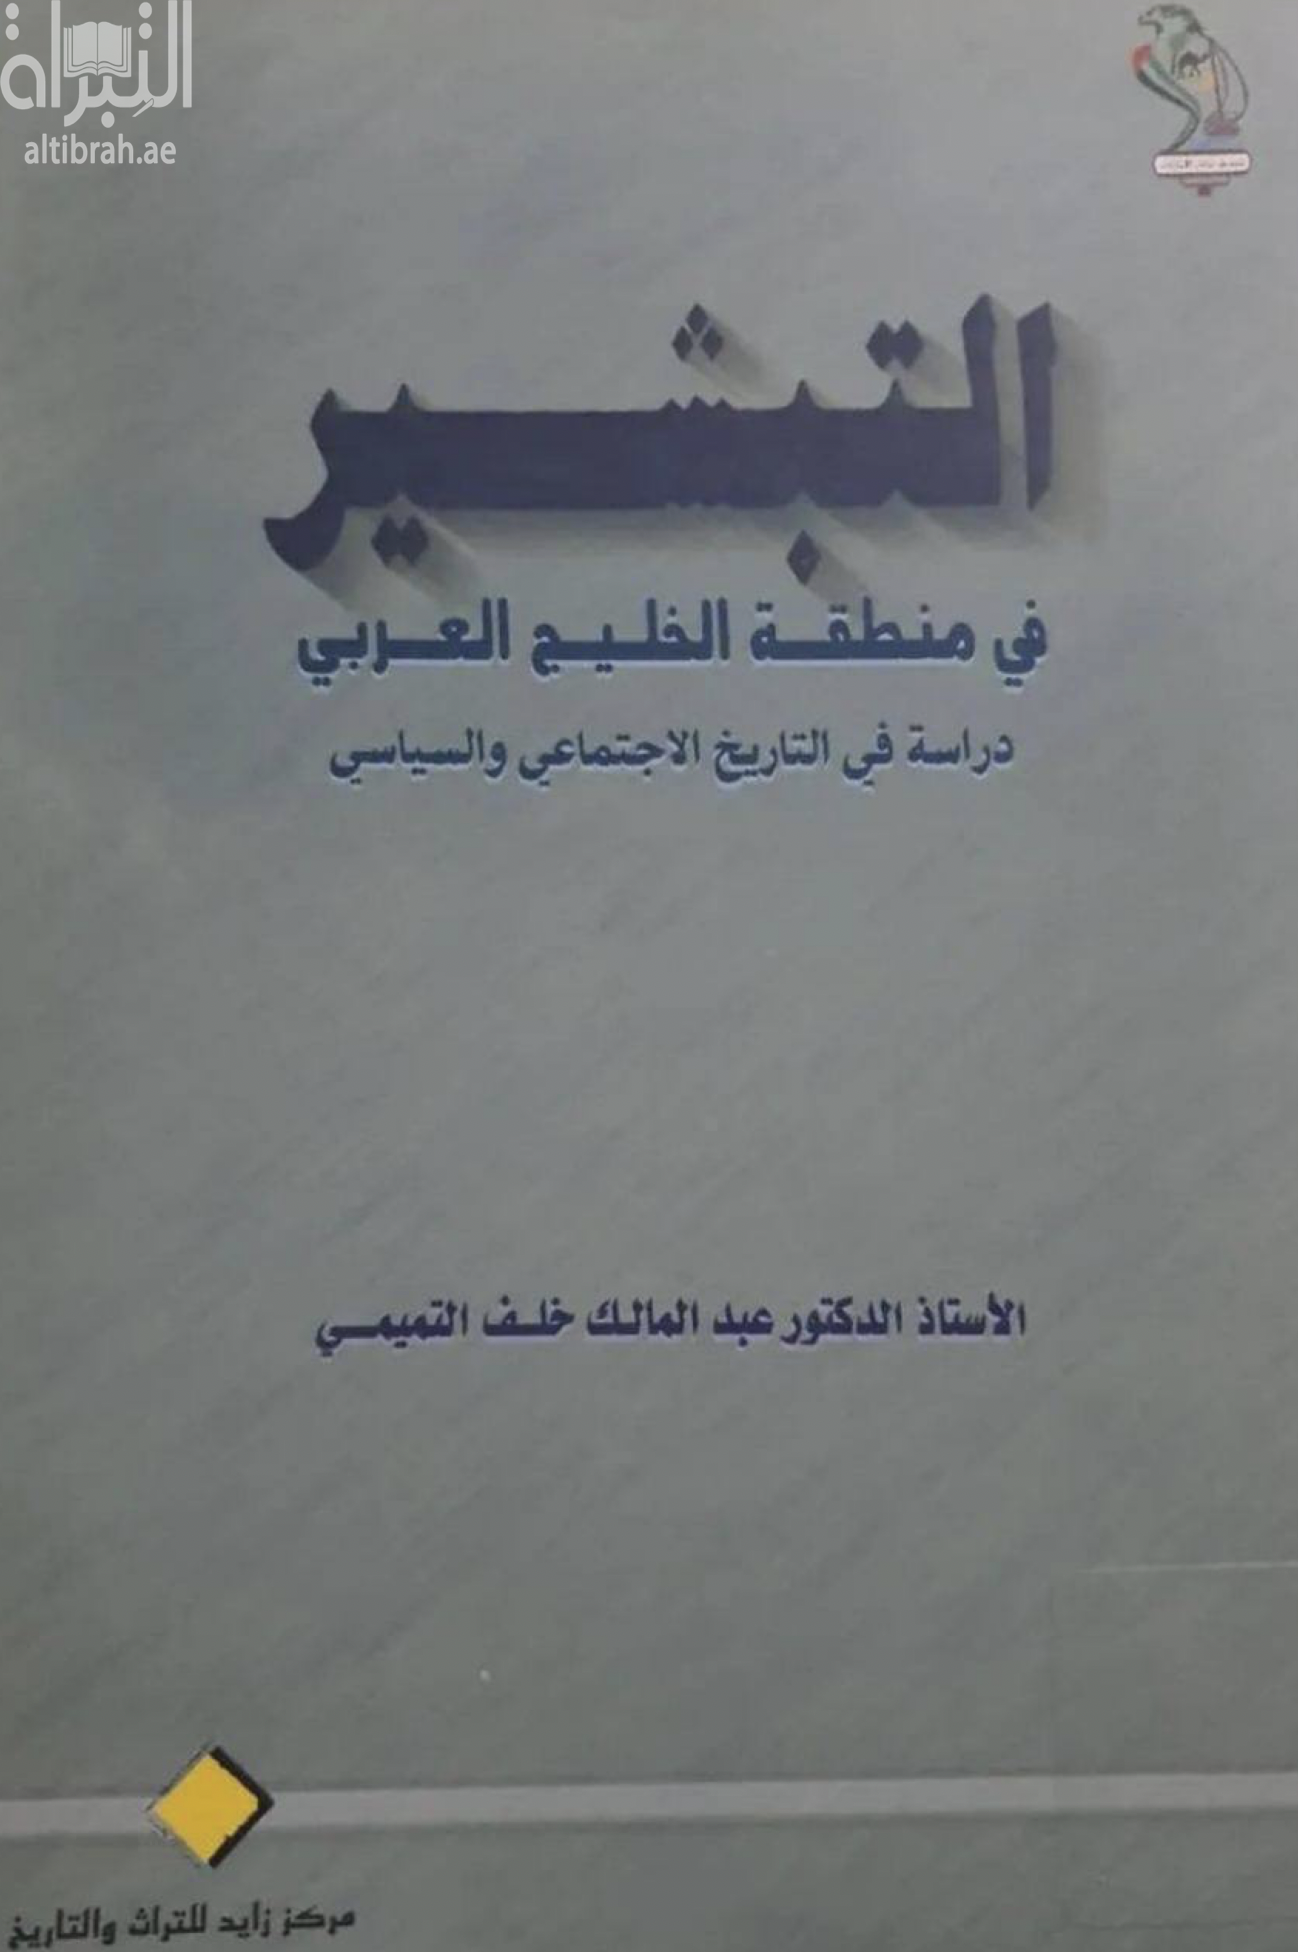 التبشير في منطقة الخليج العربي : دراسة في التاريخ الإجتماعي والسياسي